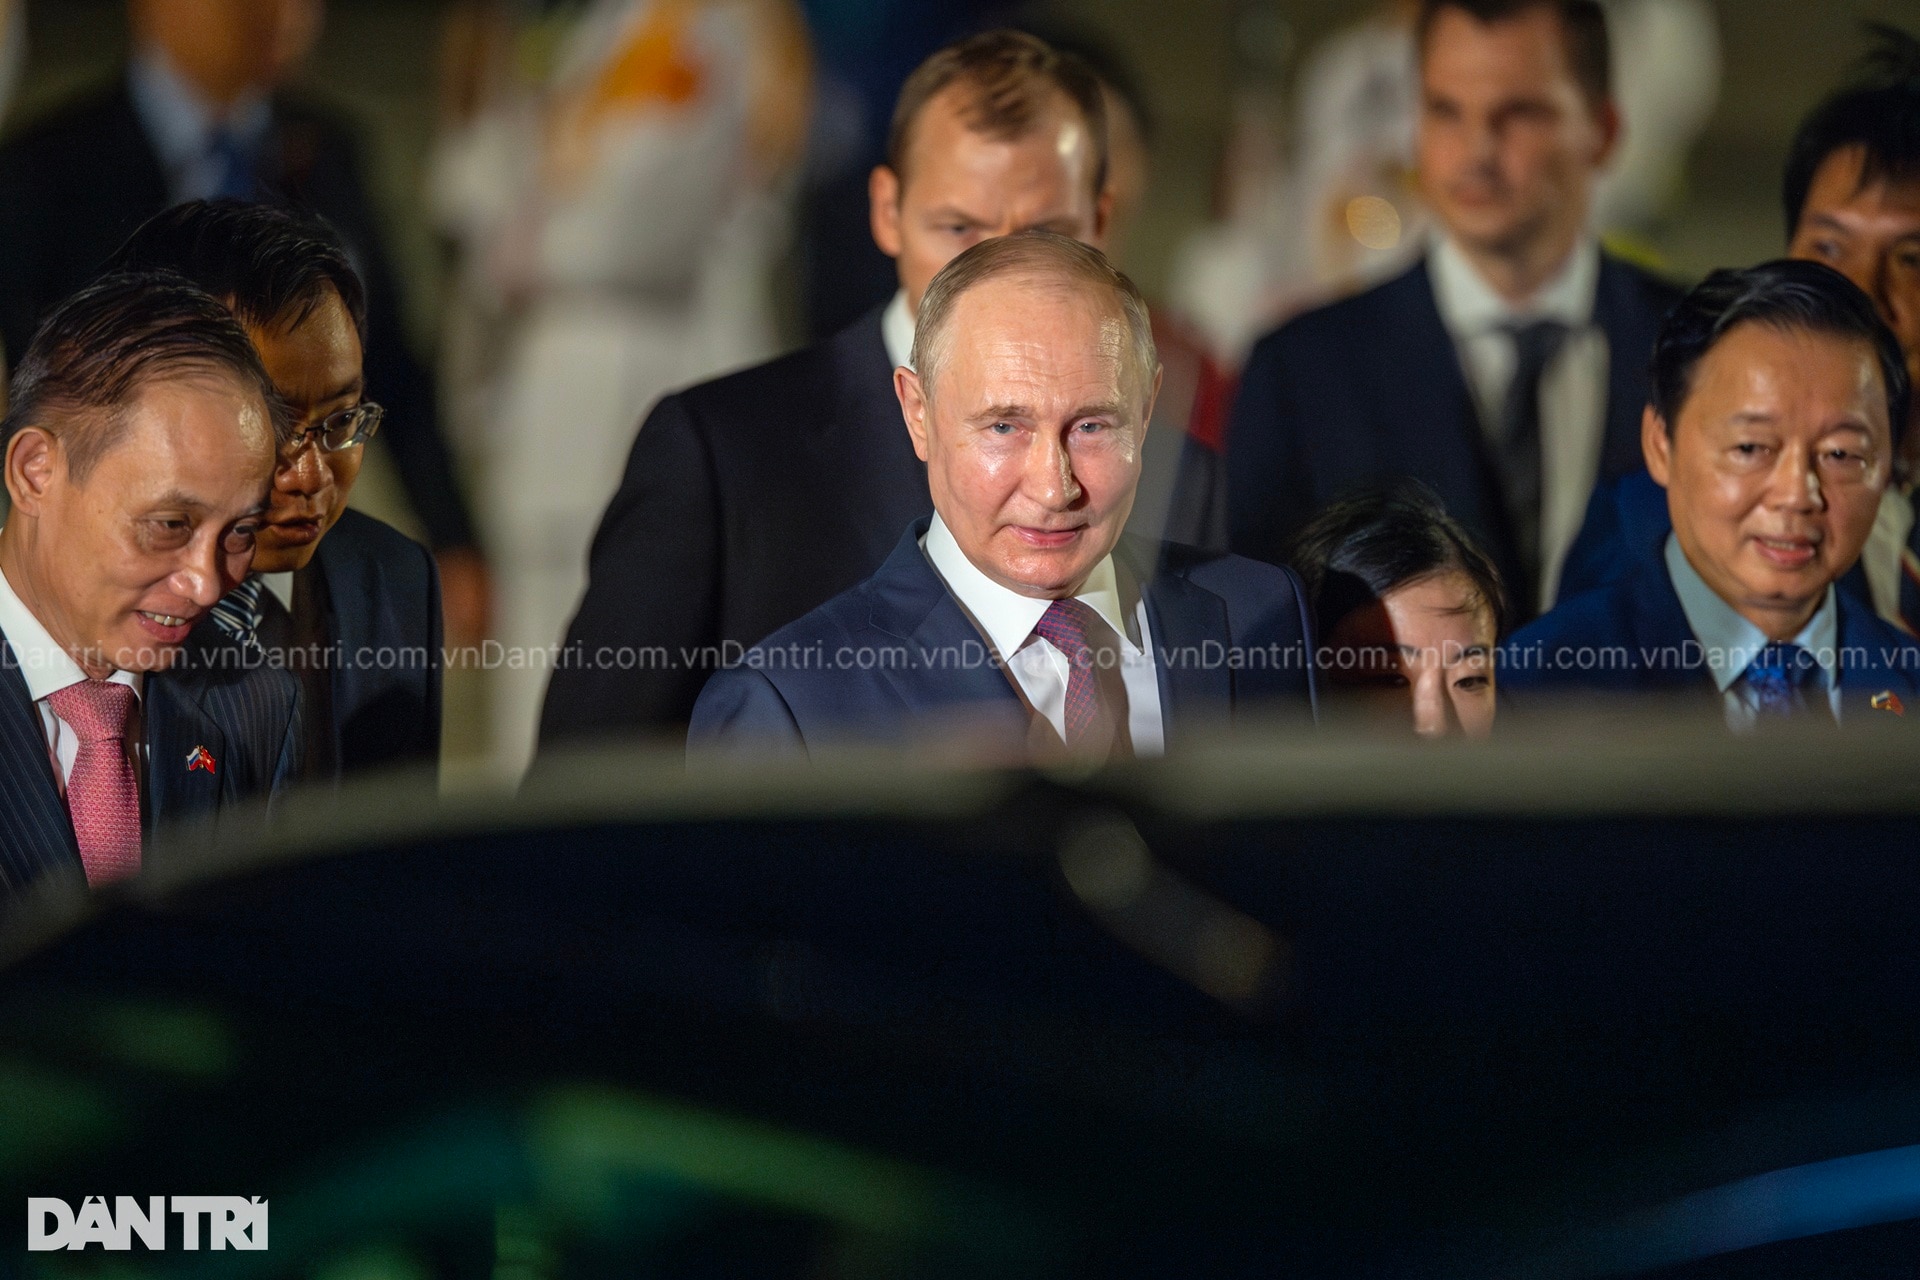 22 giờ bận rộn của Tổng thống Putin trong chuyến thăm Việt Nam - 2